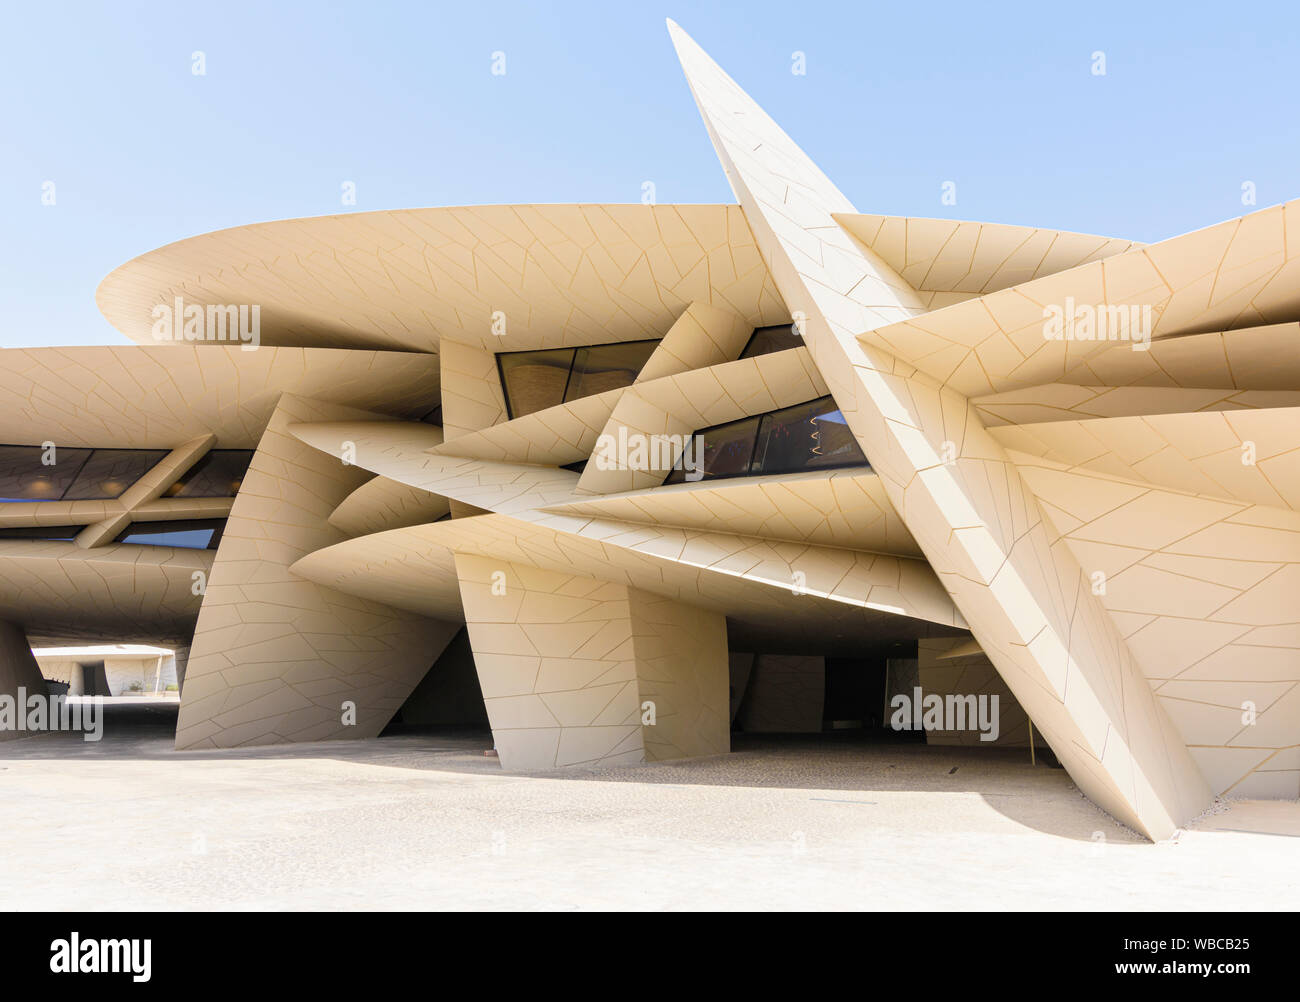 Le desert rose inspiré de repère architectural le Musée national du Qatar, Doha, Qatar Banque D'Images